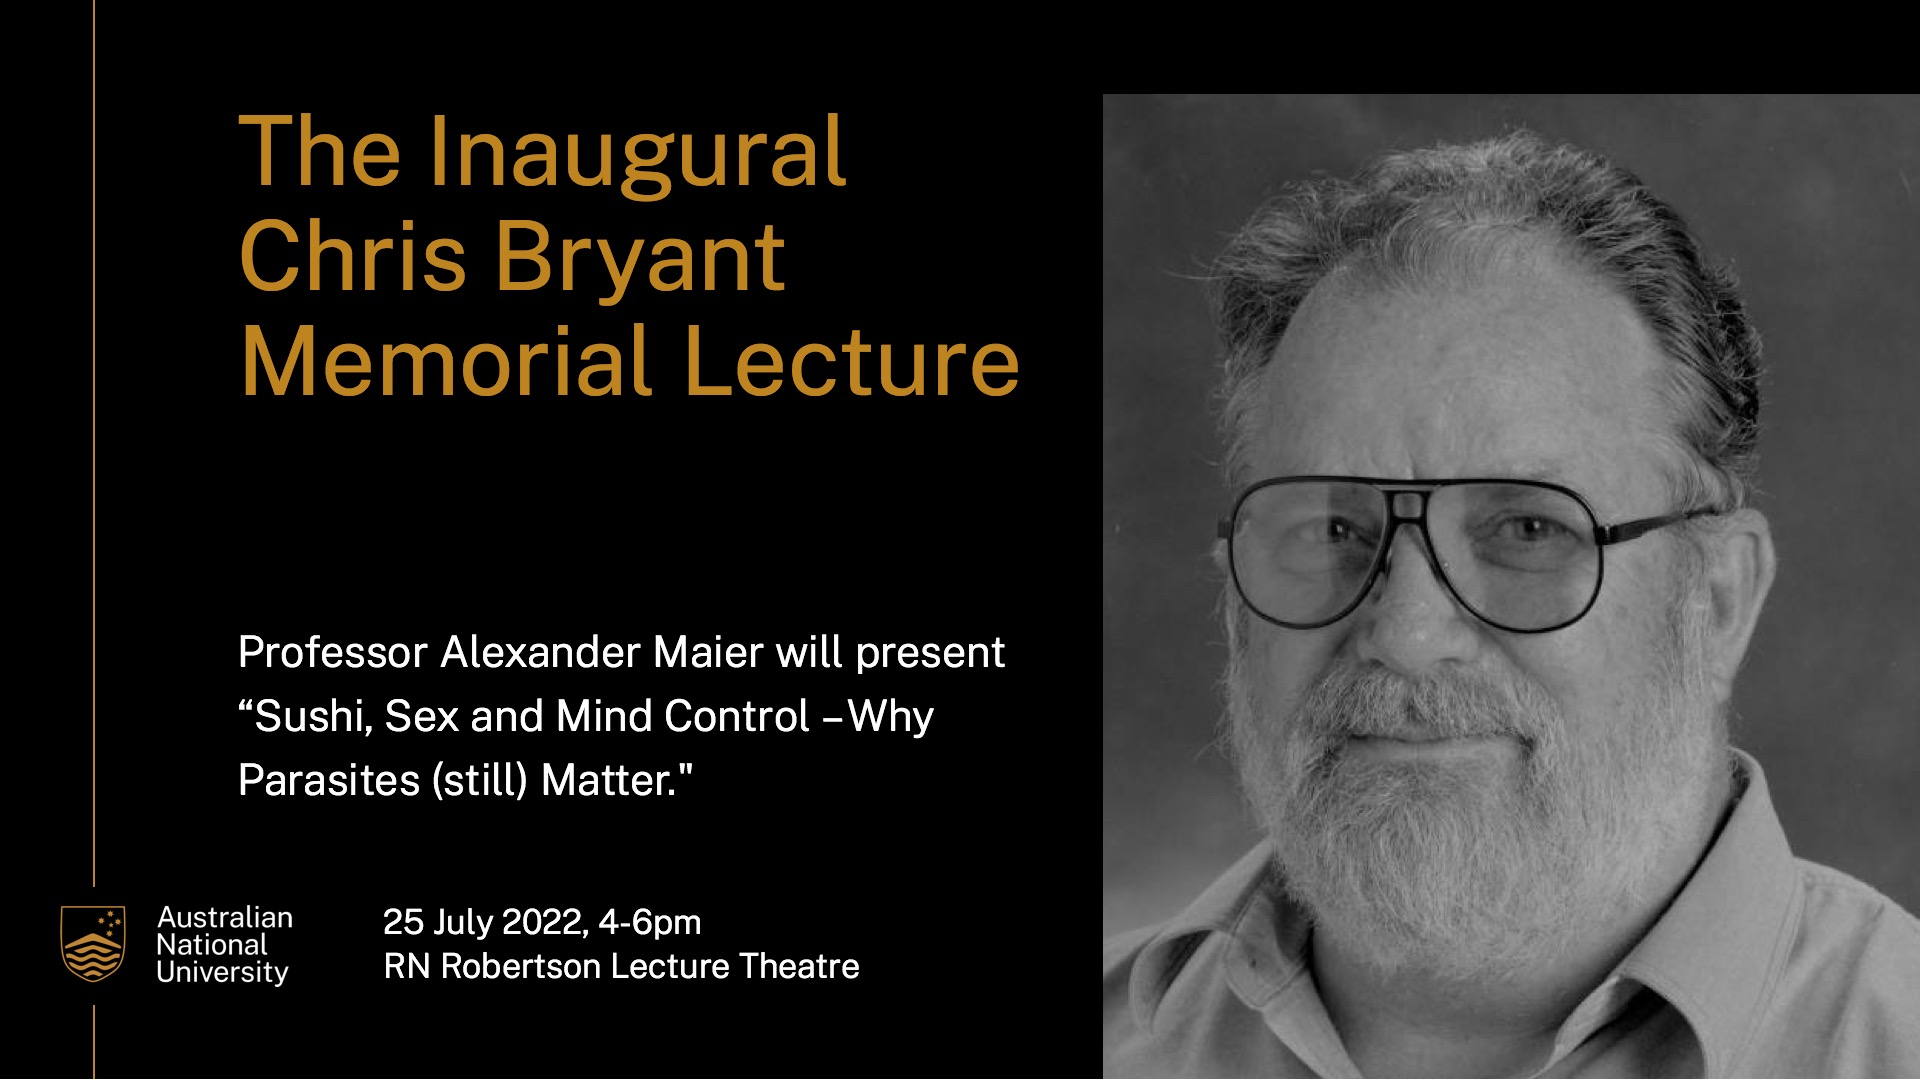 Chris Bryant Memorial Lecture